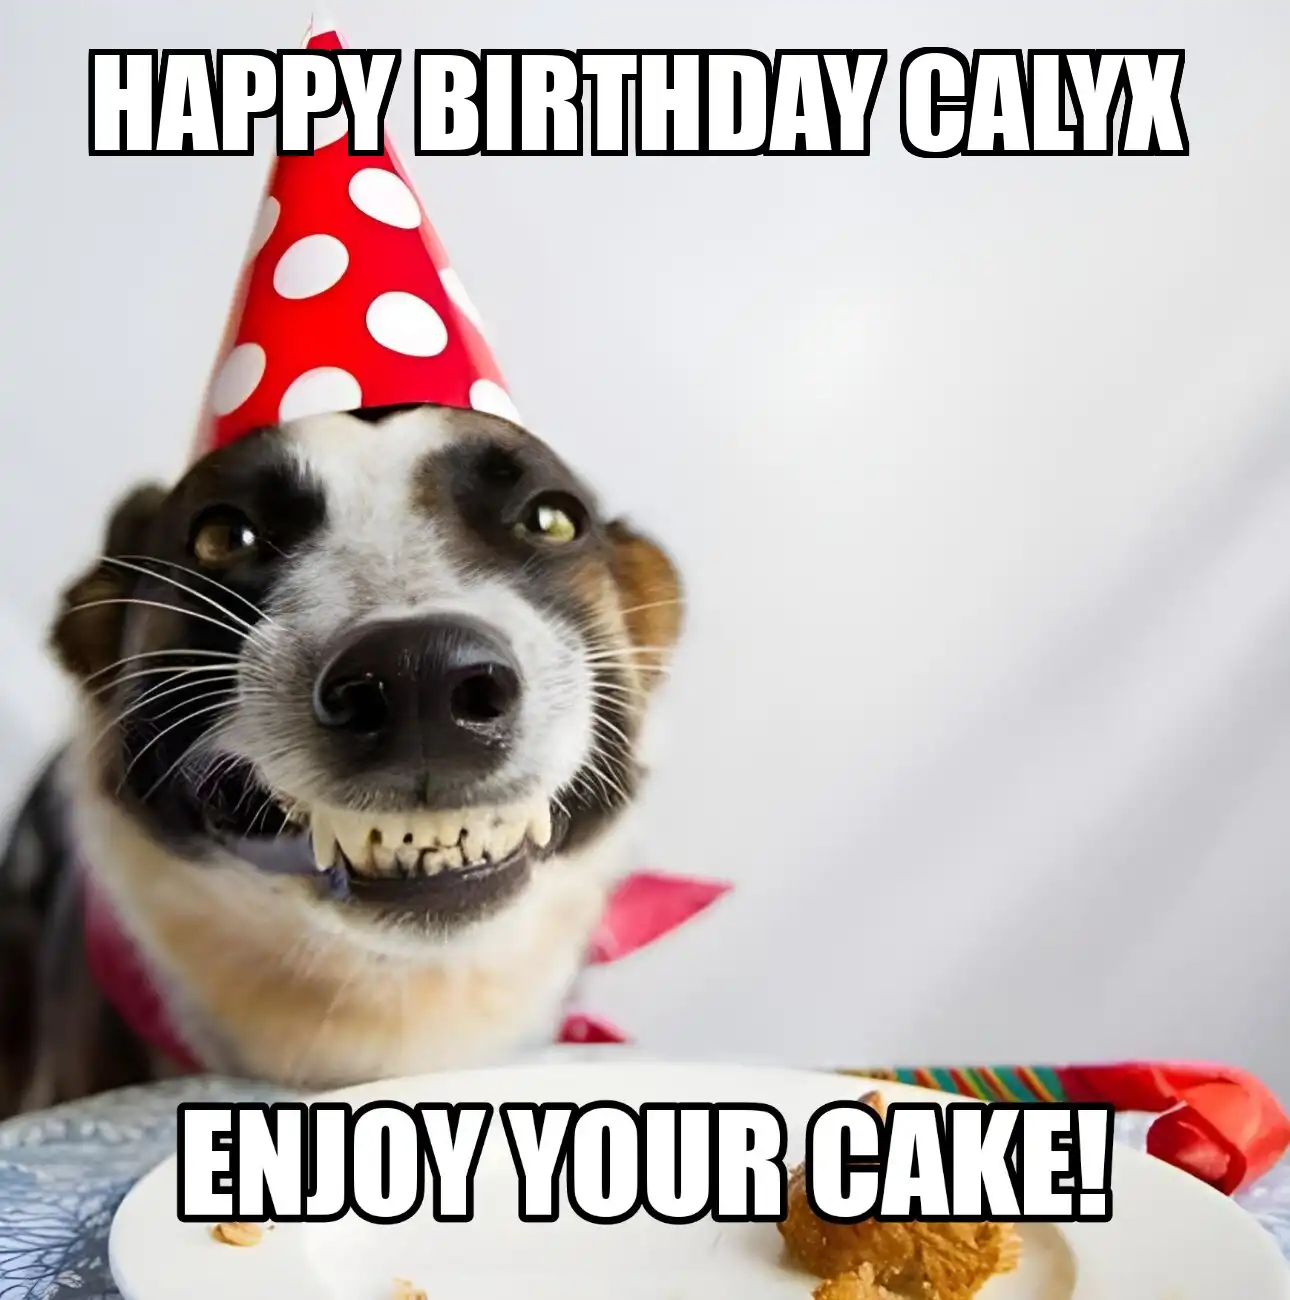 Happy Birthday Calyx Enjoy Your Cake Dog Meme